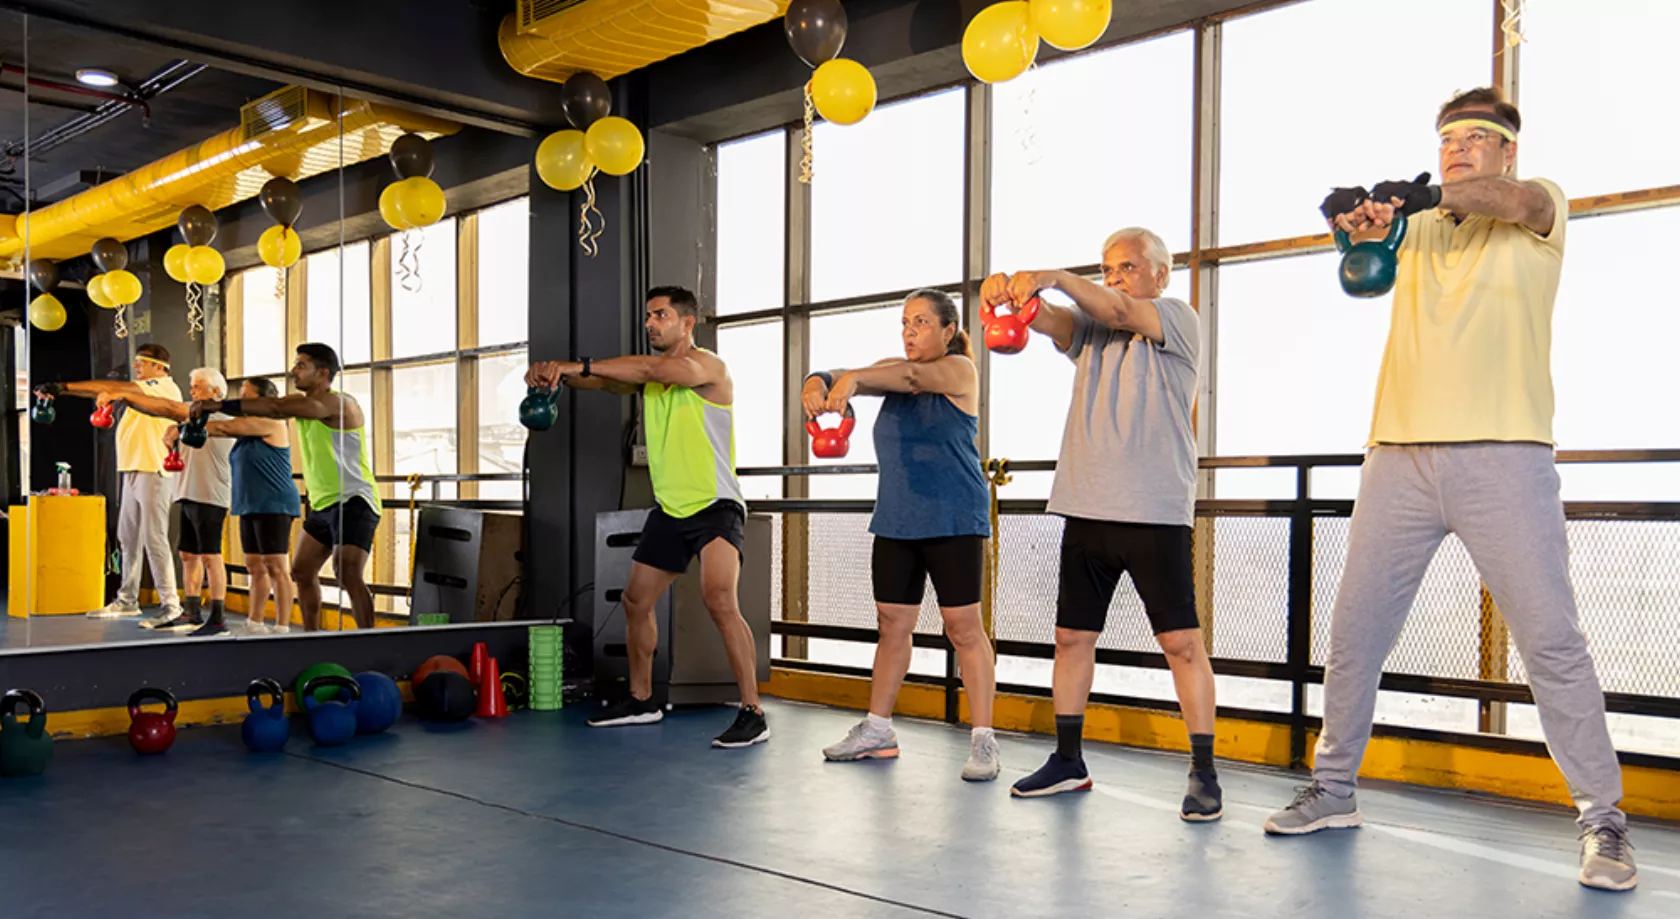 Schlaganfall-Patienten in einer Sporthalle trainieren im Stehen mit Gewichten.